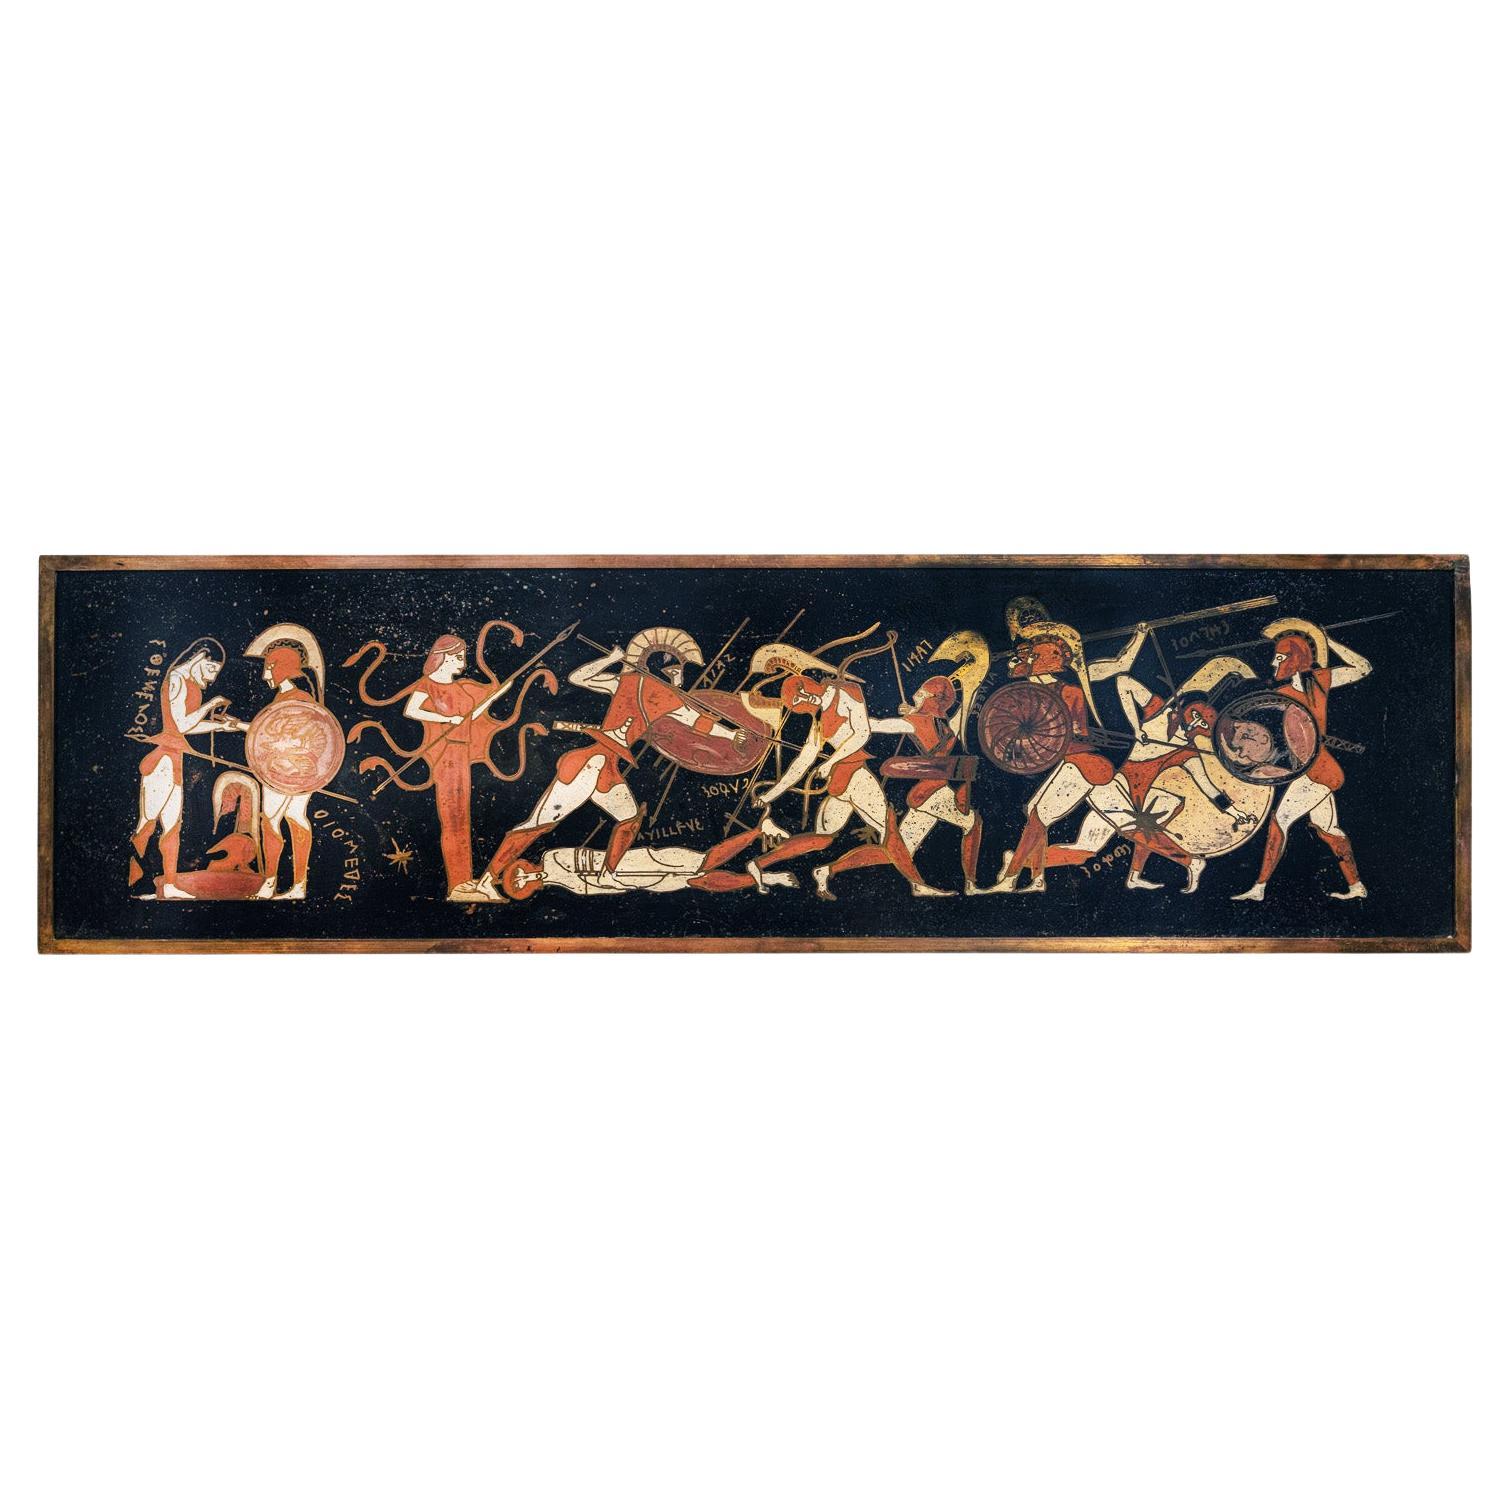 Rare peinture de mythologie grecque de Philip & Kelvin Laverne 1959, « Signé »